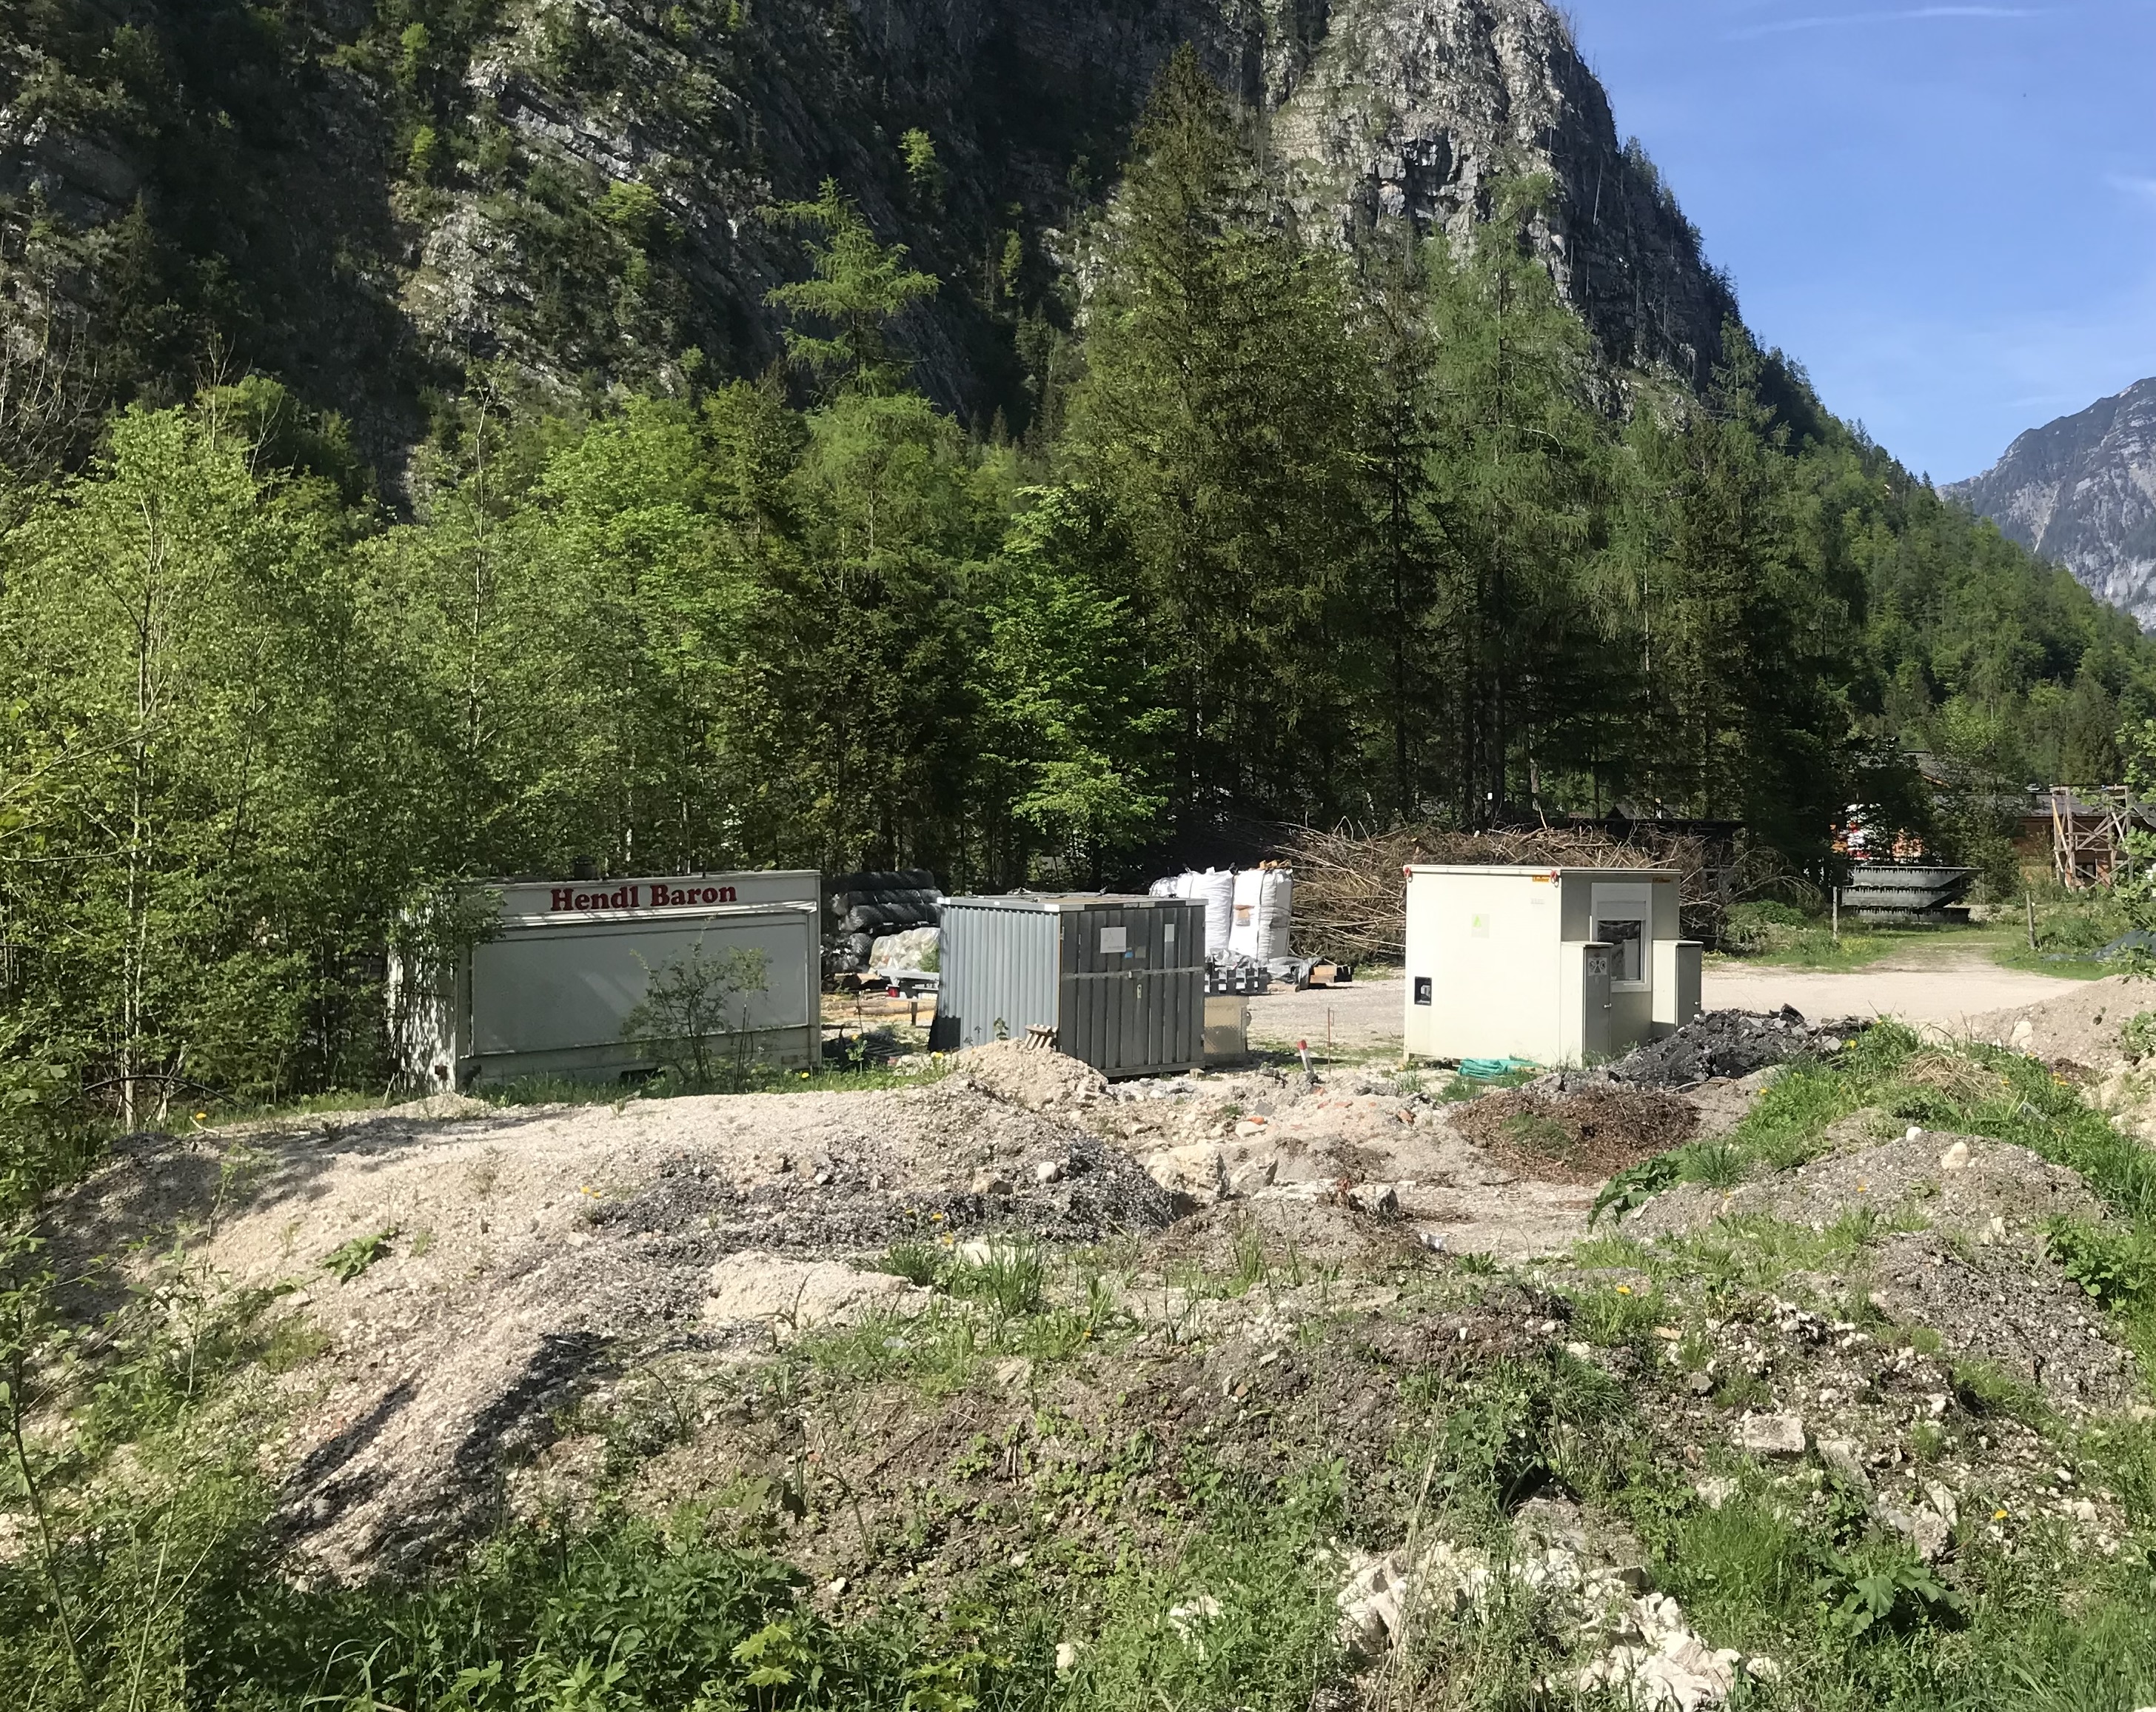 Vor einer Wald- und Bergkulisse befindet sich eine Art Lagerplatz mit diversen Containern auf einem Schutthaufen. Links im Bild eine offensichtlich ausrangierte Imbissbude mit der Aufschrift „Hendl Baron“.